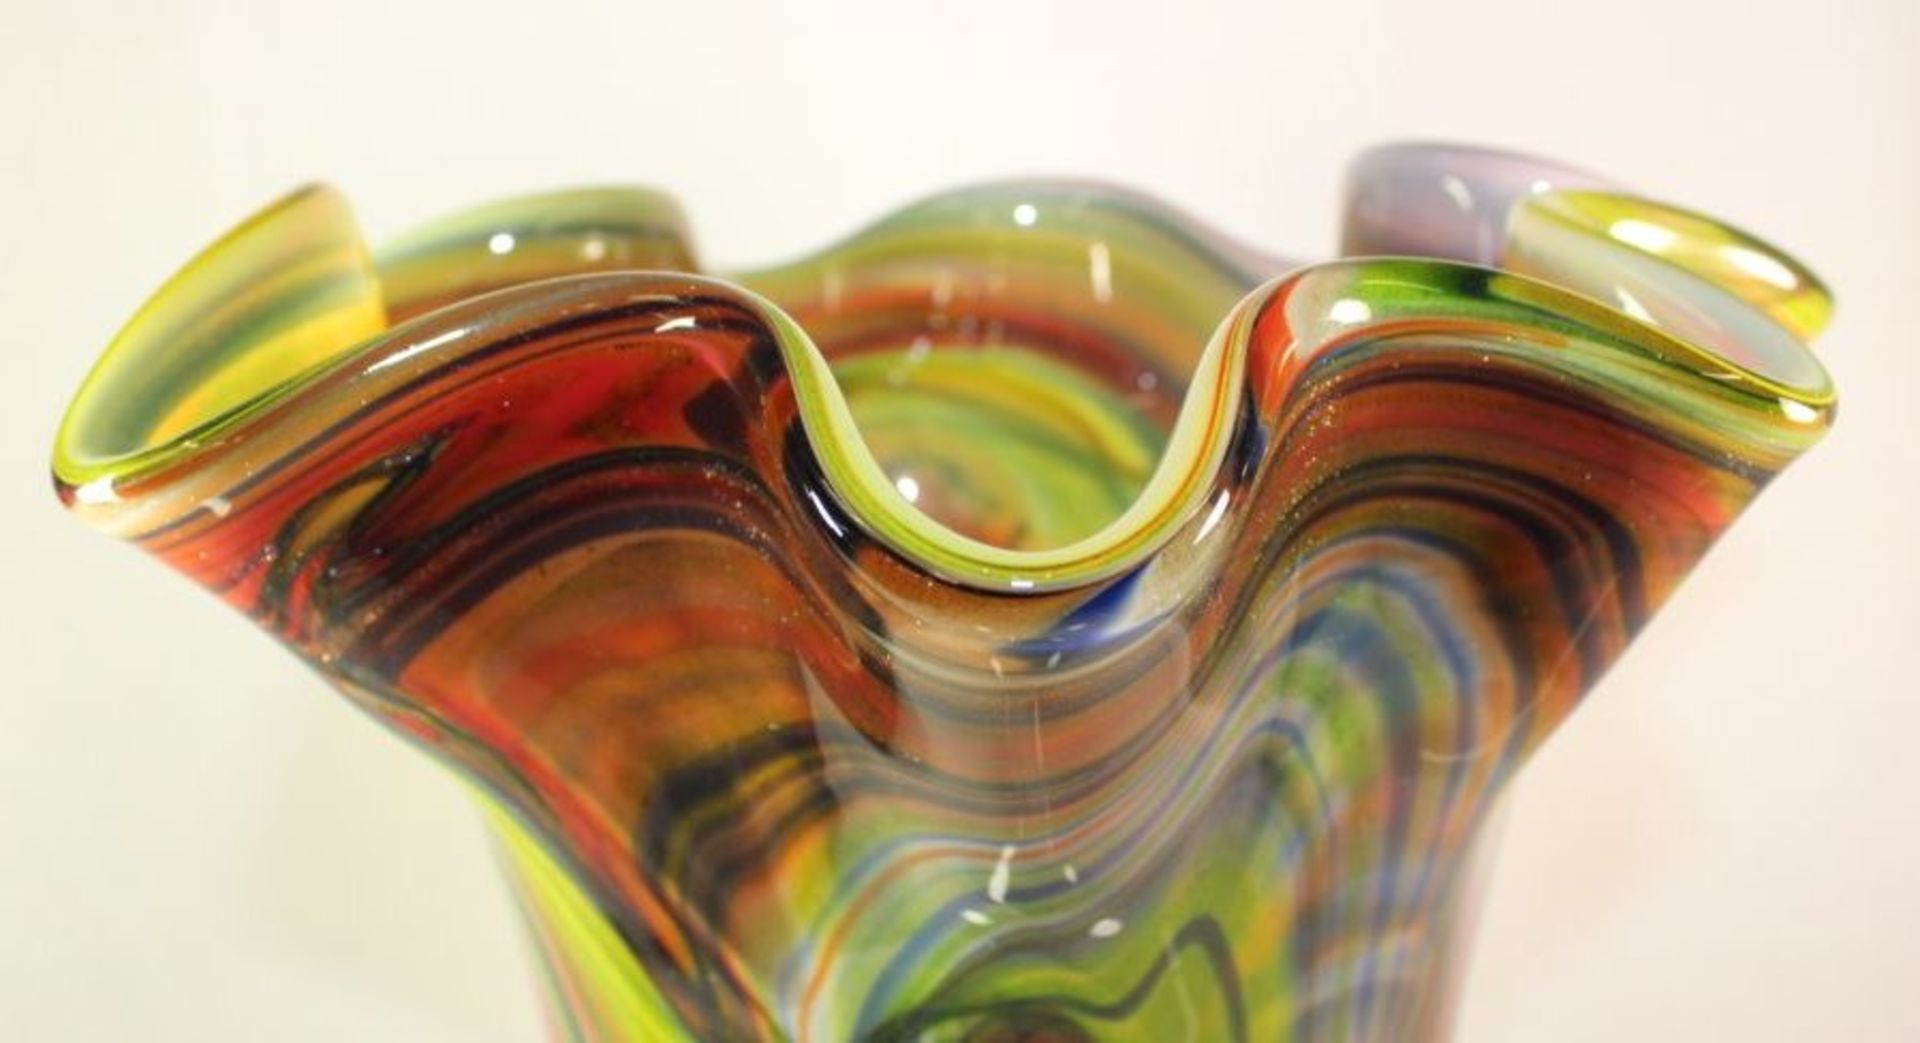 hohe Kunstglas-Vase, farbige Einschmelzungen, H-45cm.- - -22.61 % buyer's premium on the hammer - Bild 5 aus 7